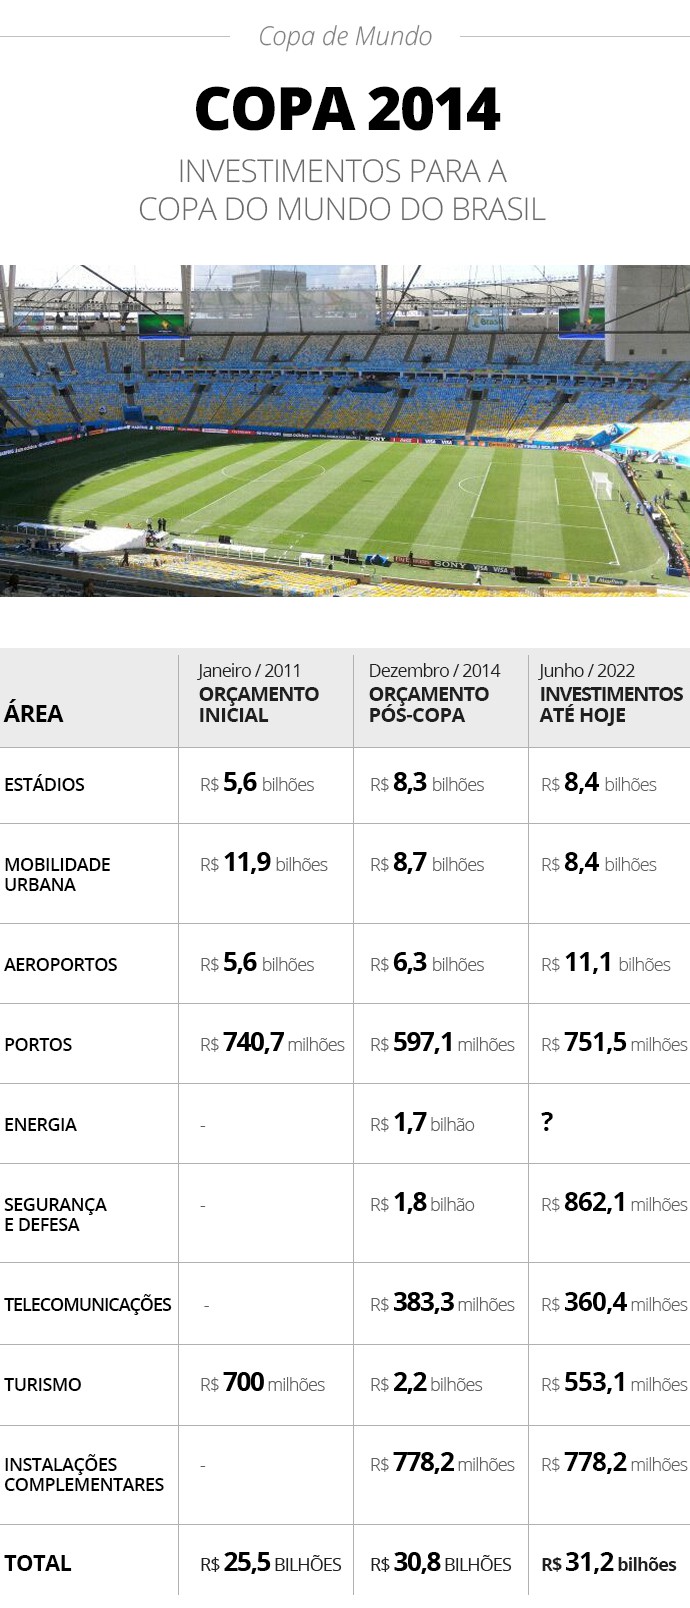 Quatro comparativo dos investimentos em projetos da Copa do Mundo de 2014 ao longo dos anos - Infografia ge